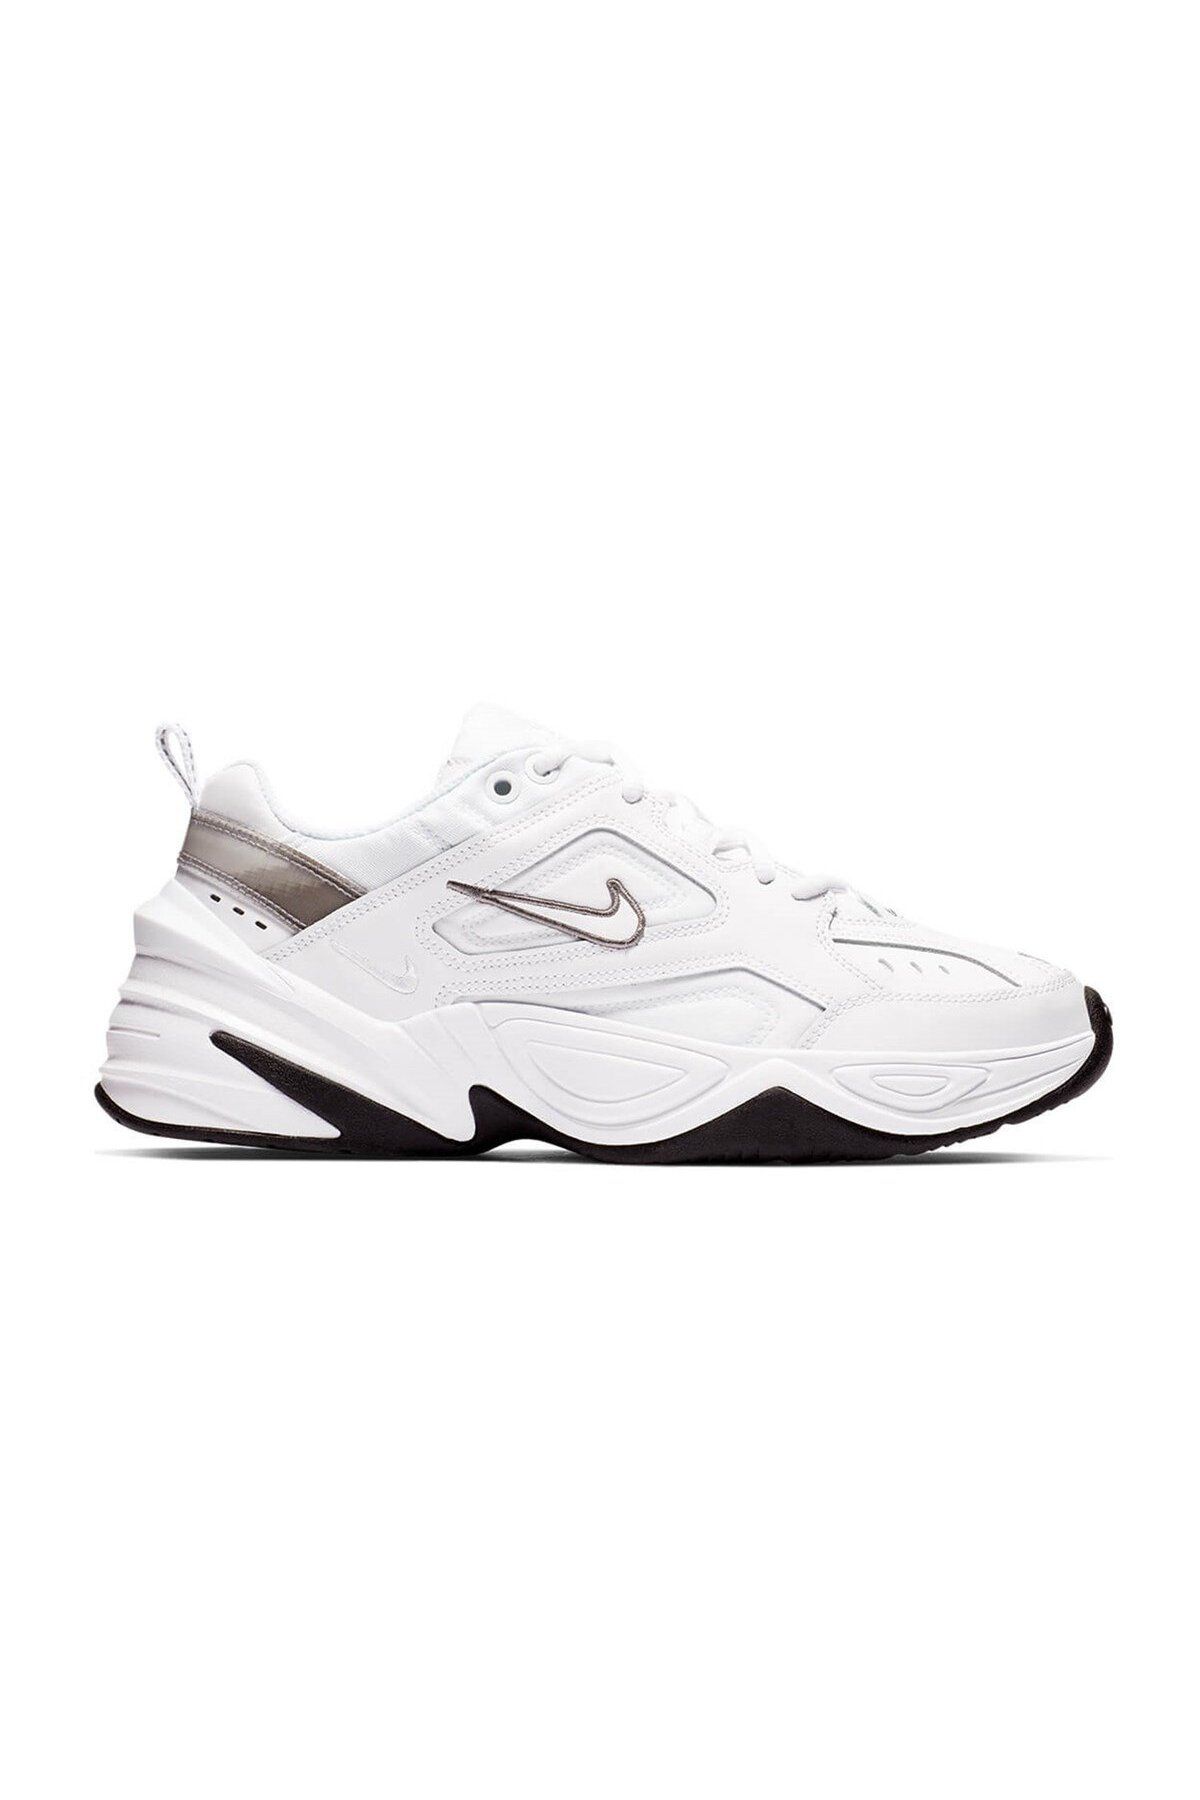 Nike M2k Tekno Sneaker Kadın Spor Ayakkabı Beyaz Bq3378-100